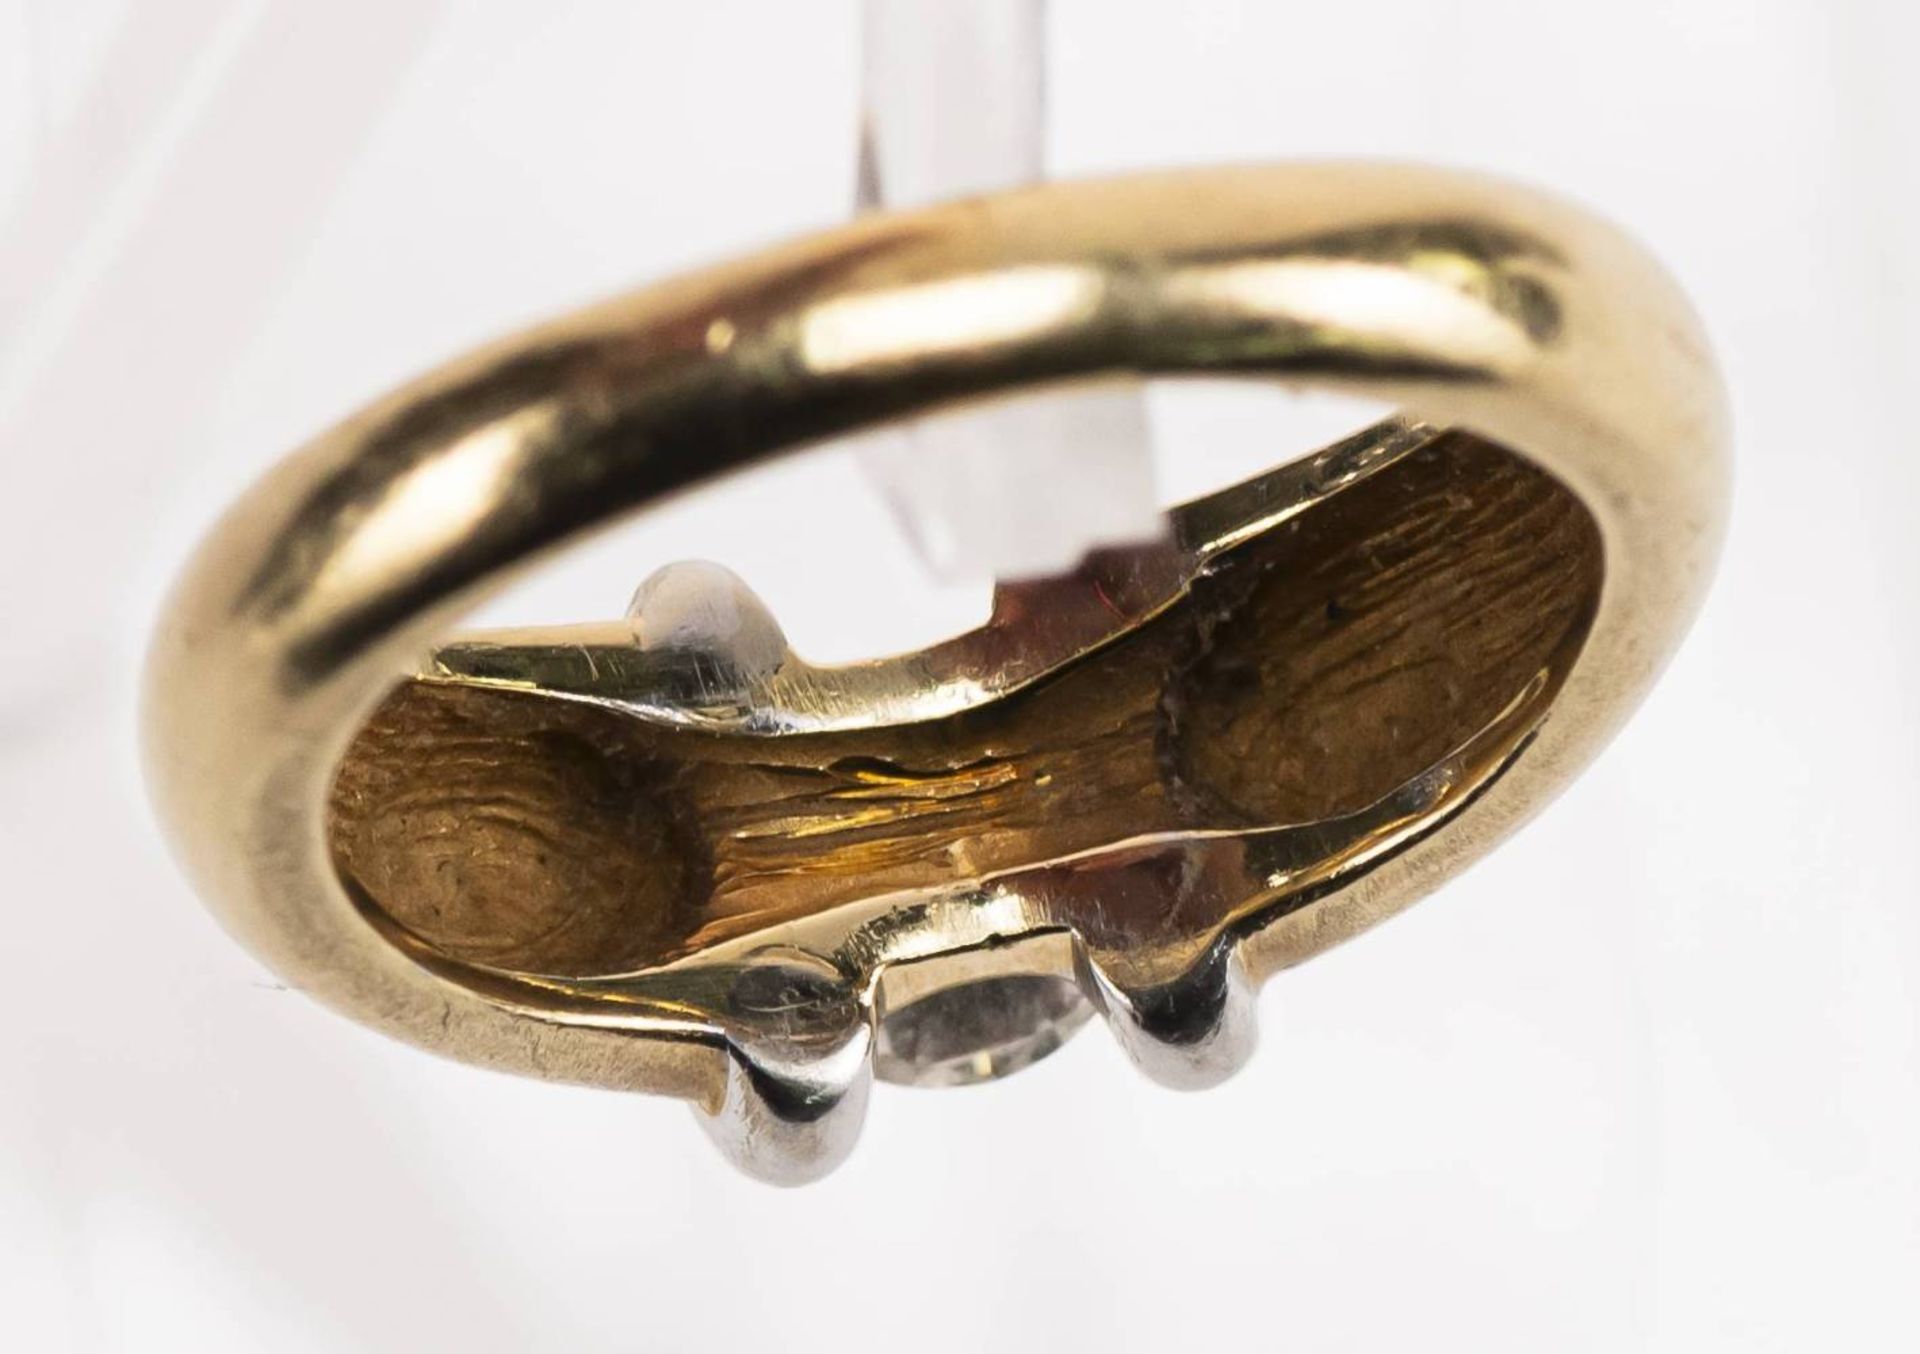 Brillant Ring, 585 Gold, bicolor, Brillant ca. 0,6ct, RW 54, ca. 6,99g. - Bild 5 aus 6